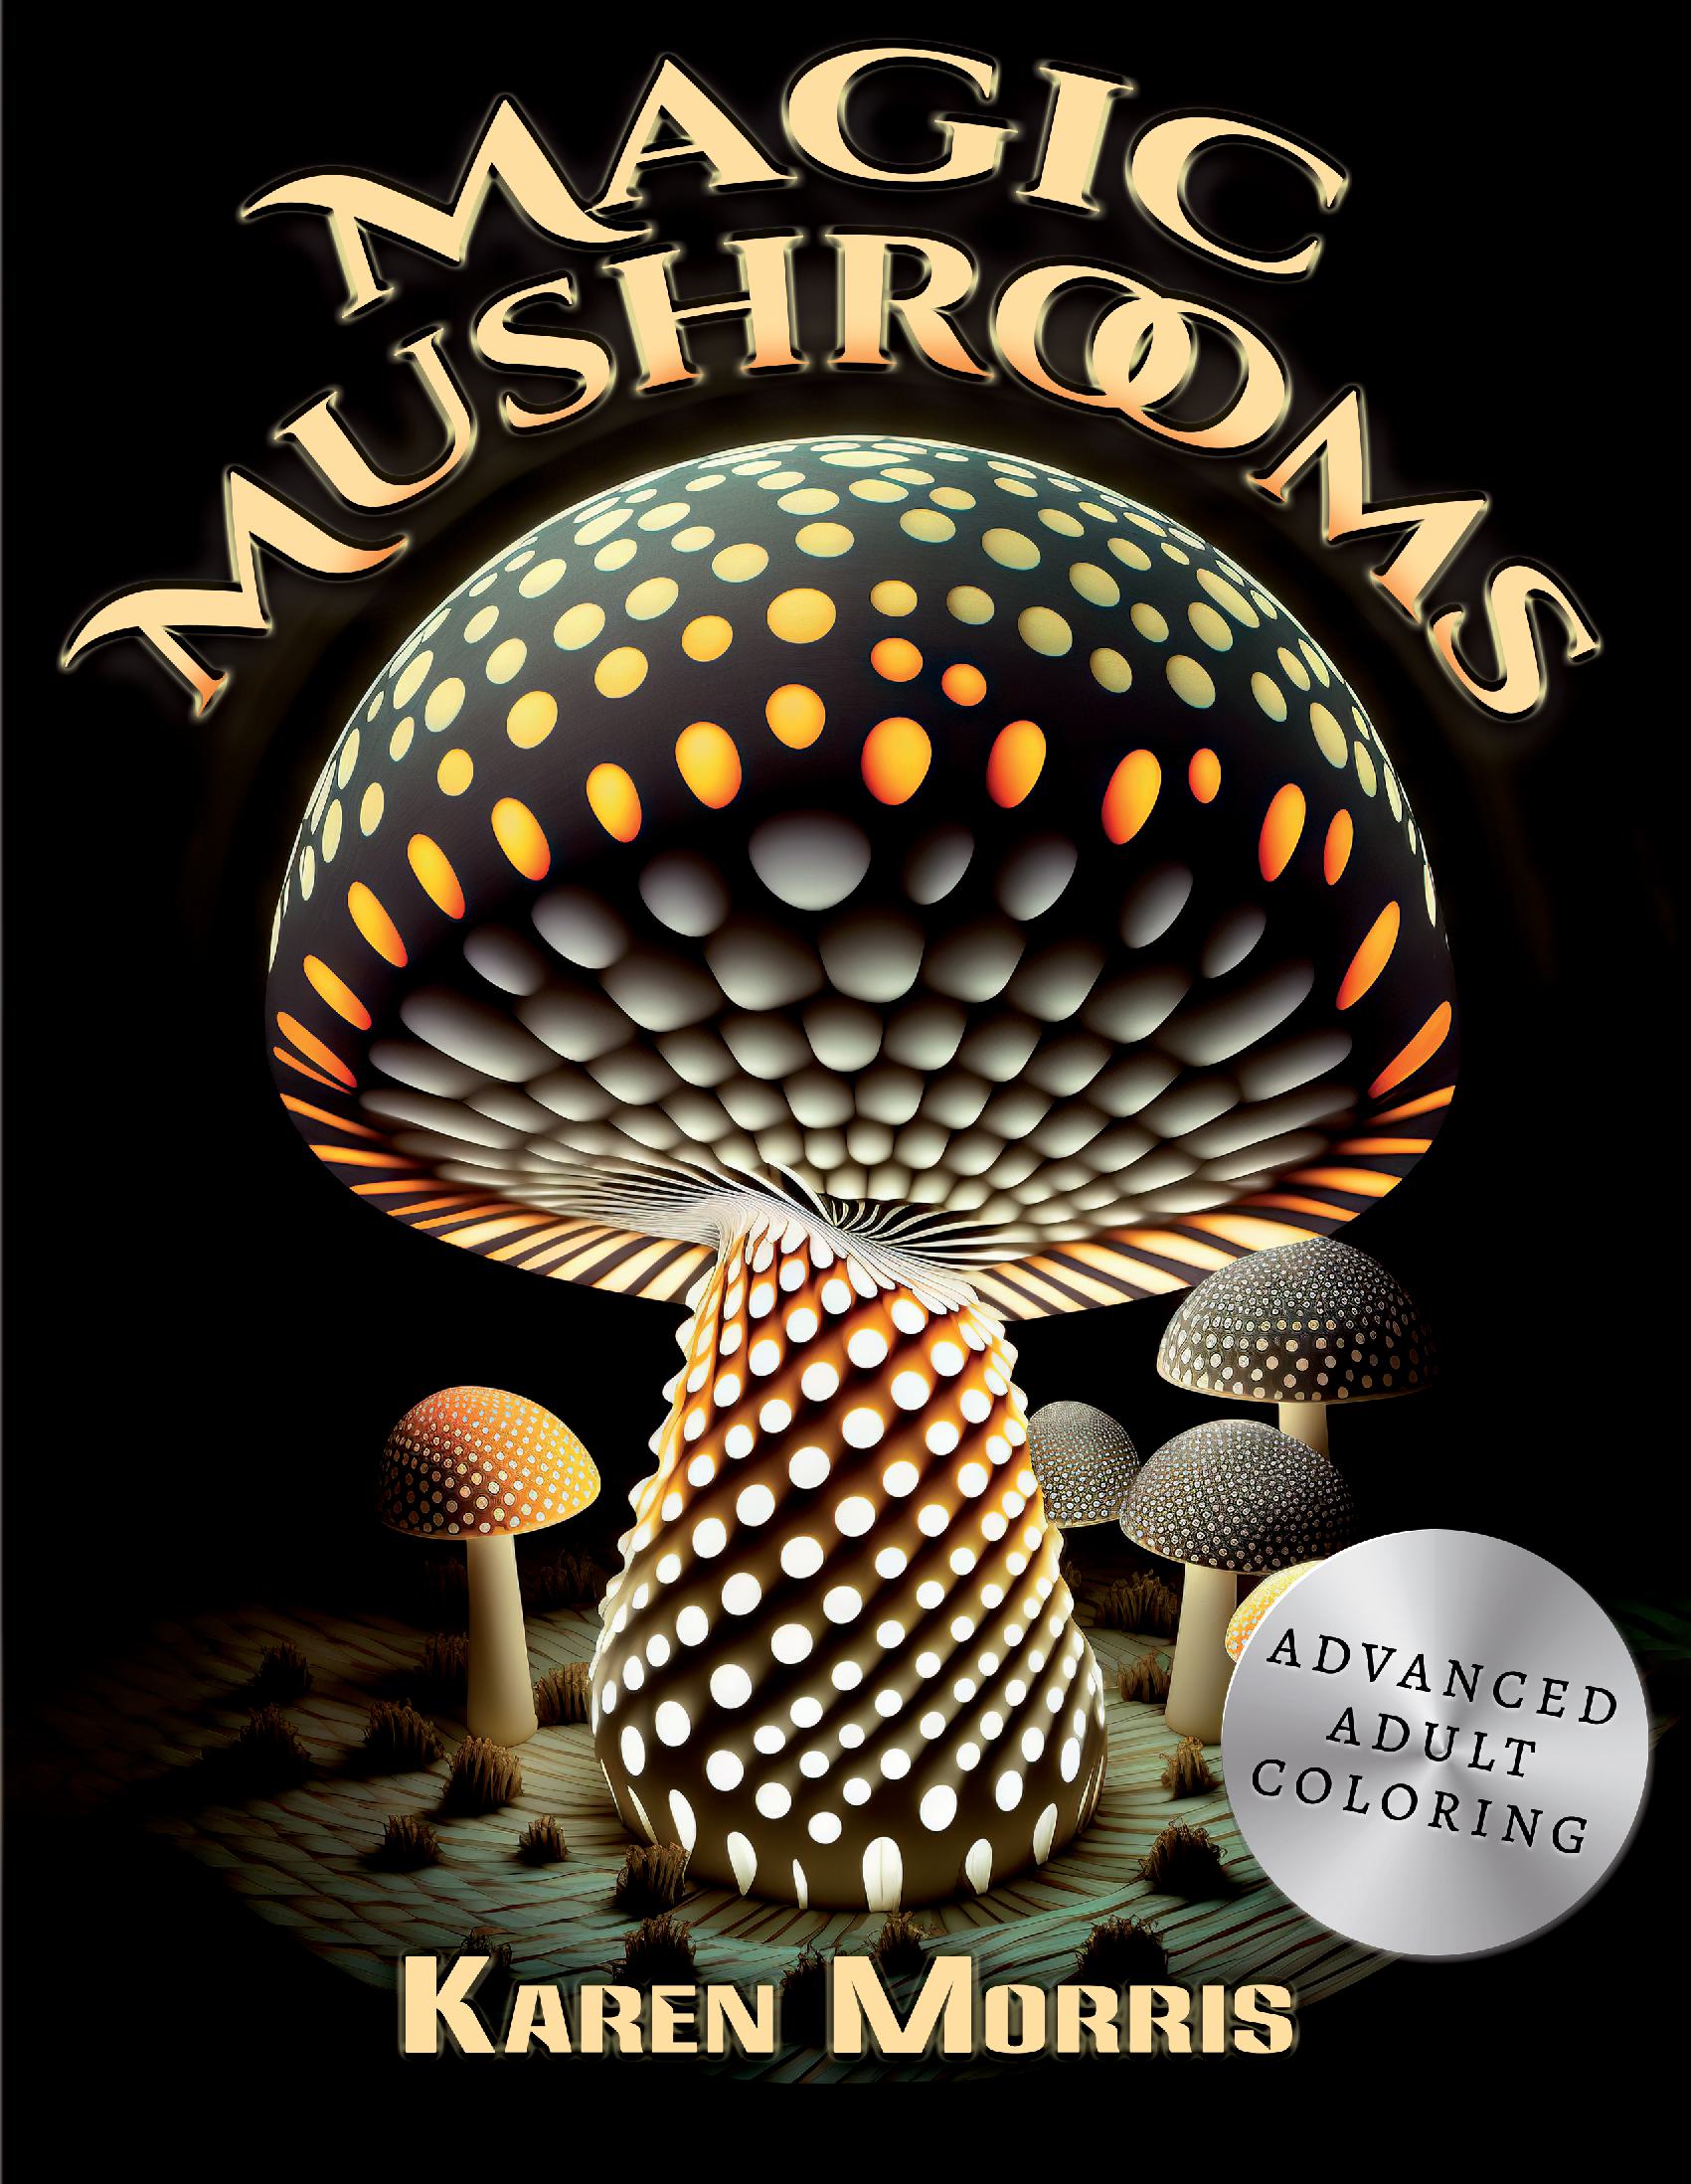 Magical Mushrooms Coloring book for Women: Mushroom houses(Magical  mushrooms coloring book for adults) (Paperback)